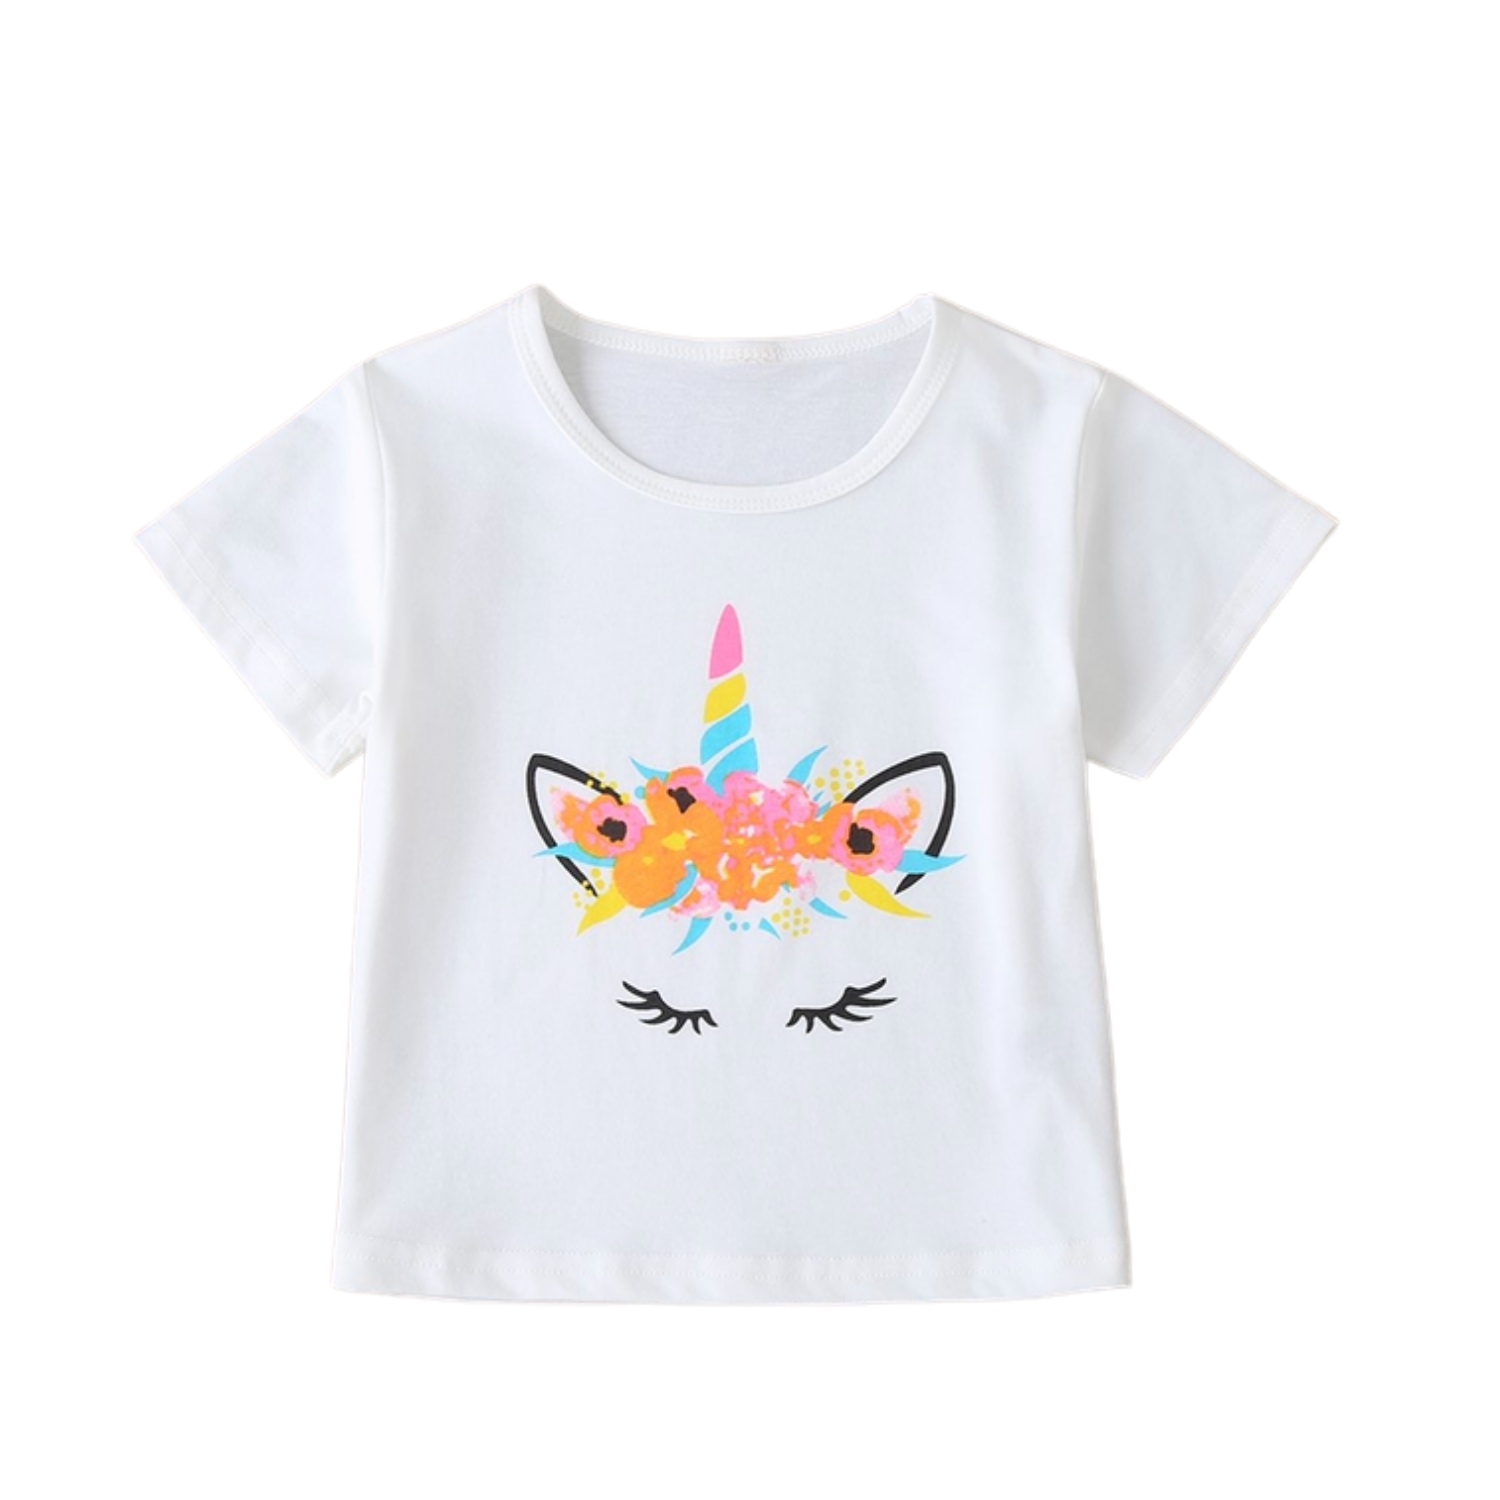 Unicorn Party T-Shirt - Cozy N Cute Kids Boutique